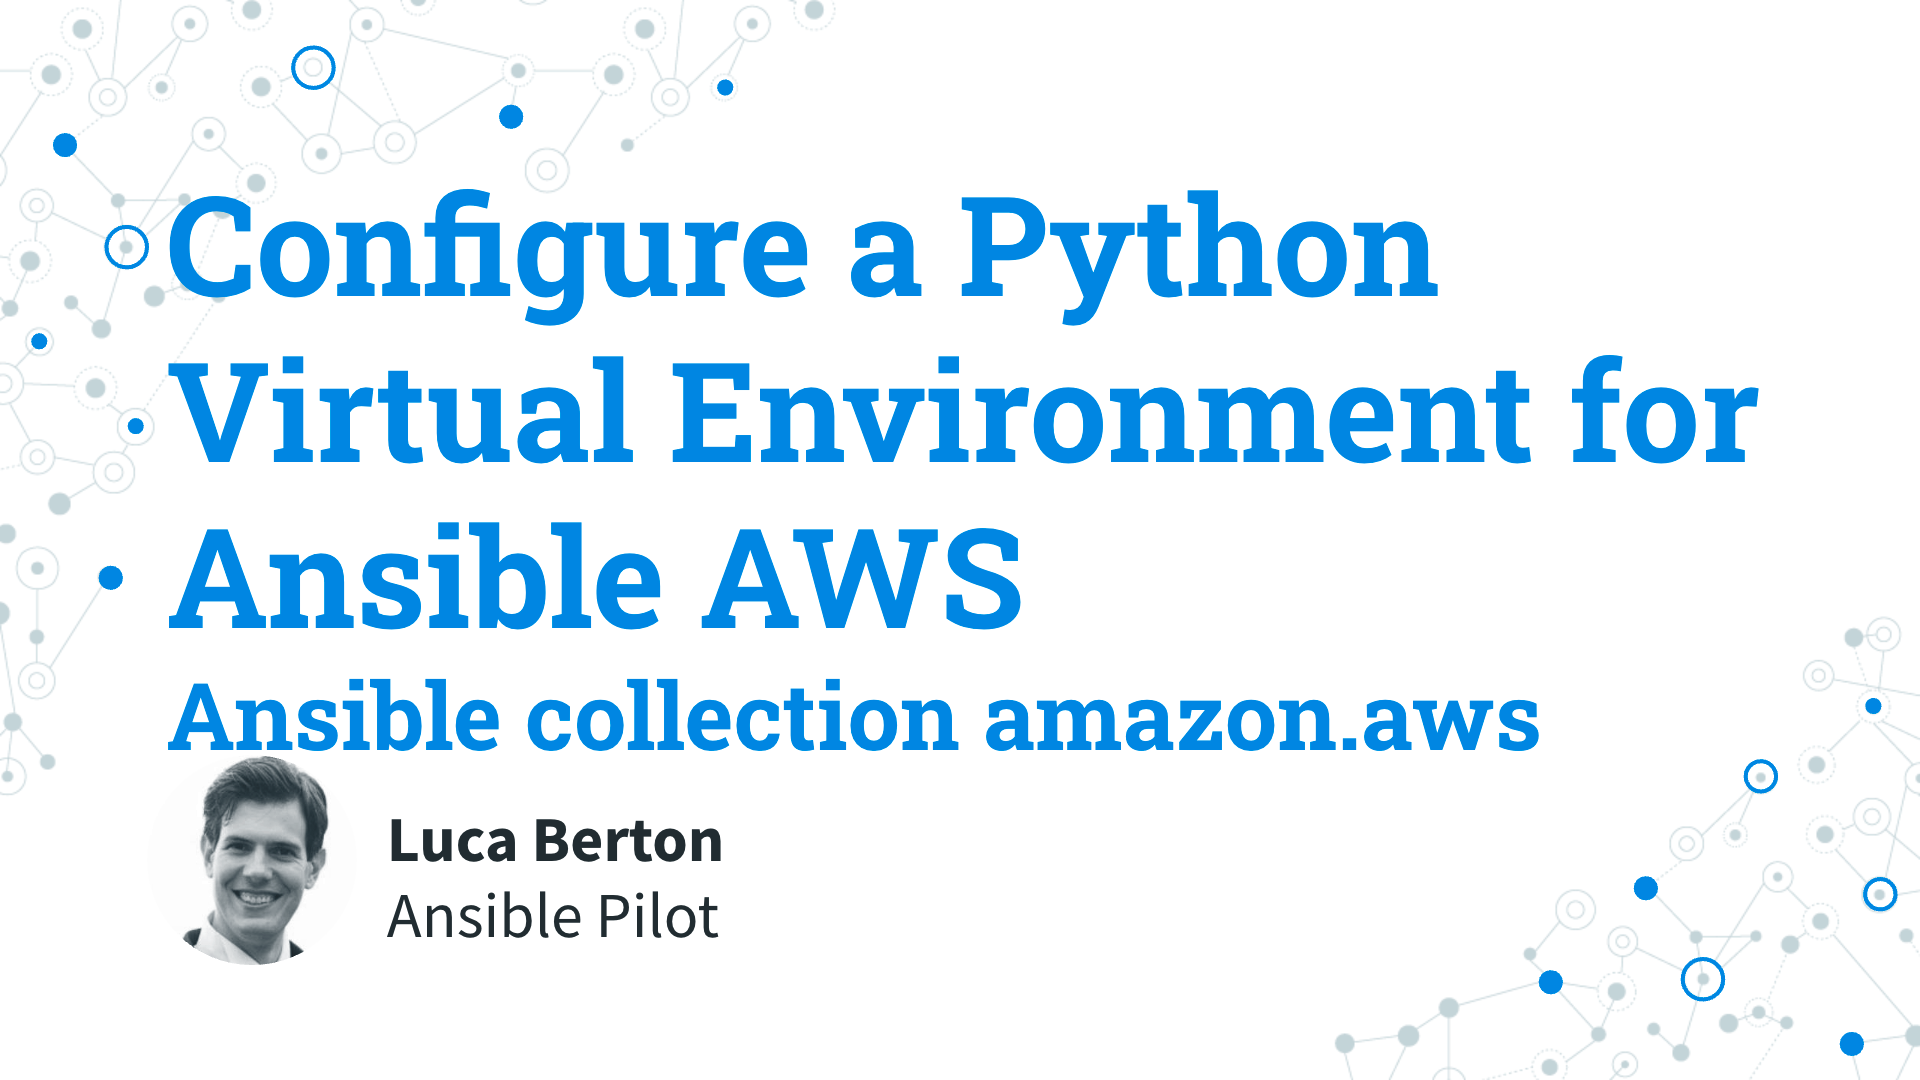 Configure a Python Virtual Environment for Ansible AWS - ansible collection amazon.aws